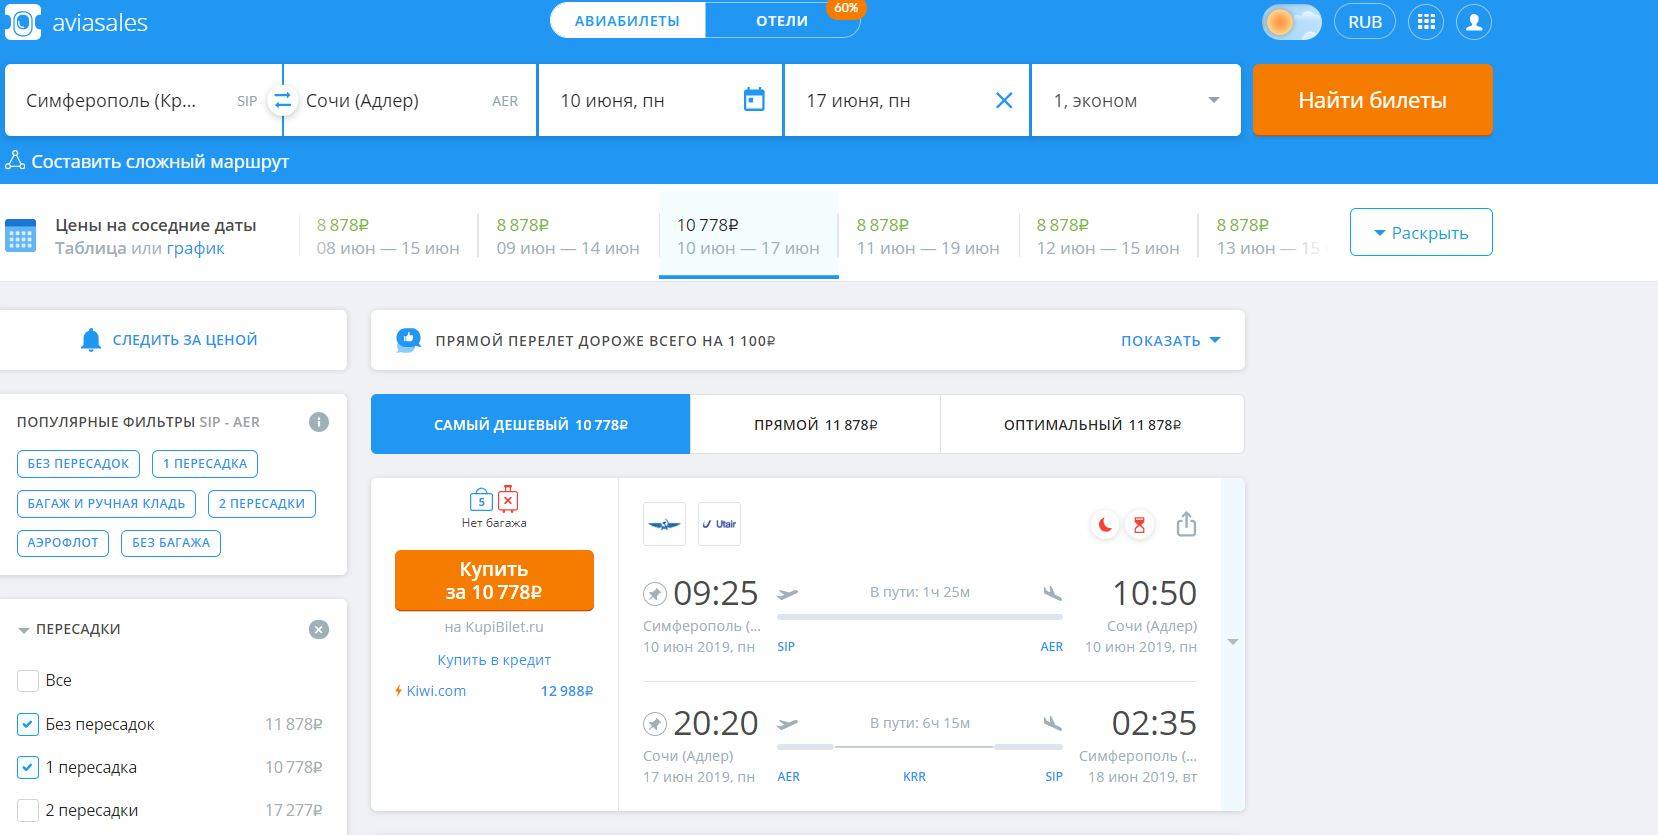 Дешевые авиабилеты на каком сайте авиабилеты из красноярска ташкент прямой рейс цена